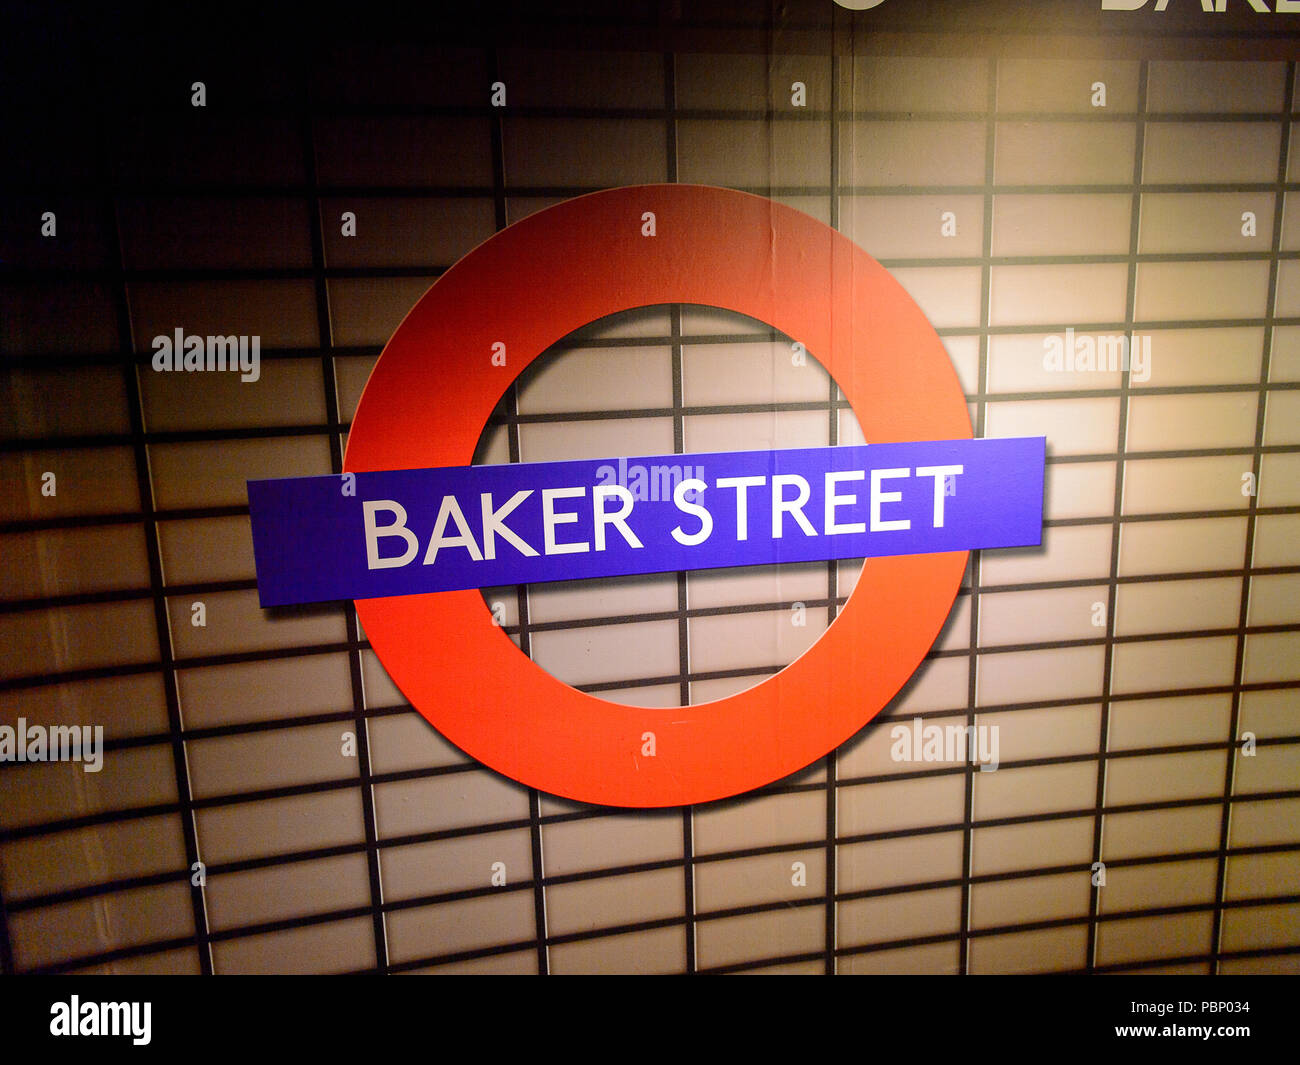 Londres, Angleterre - le 22 juillet 2016 : signe de métro Baker Street au musée de cire Madame Tussauds. C'est une attraction touristique majeure à Londres Banque D'Images